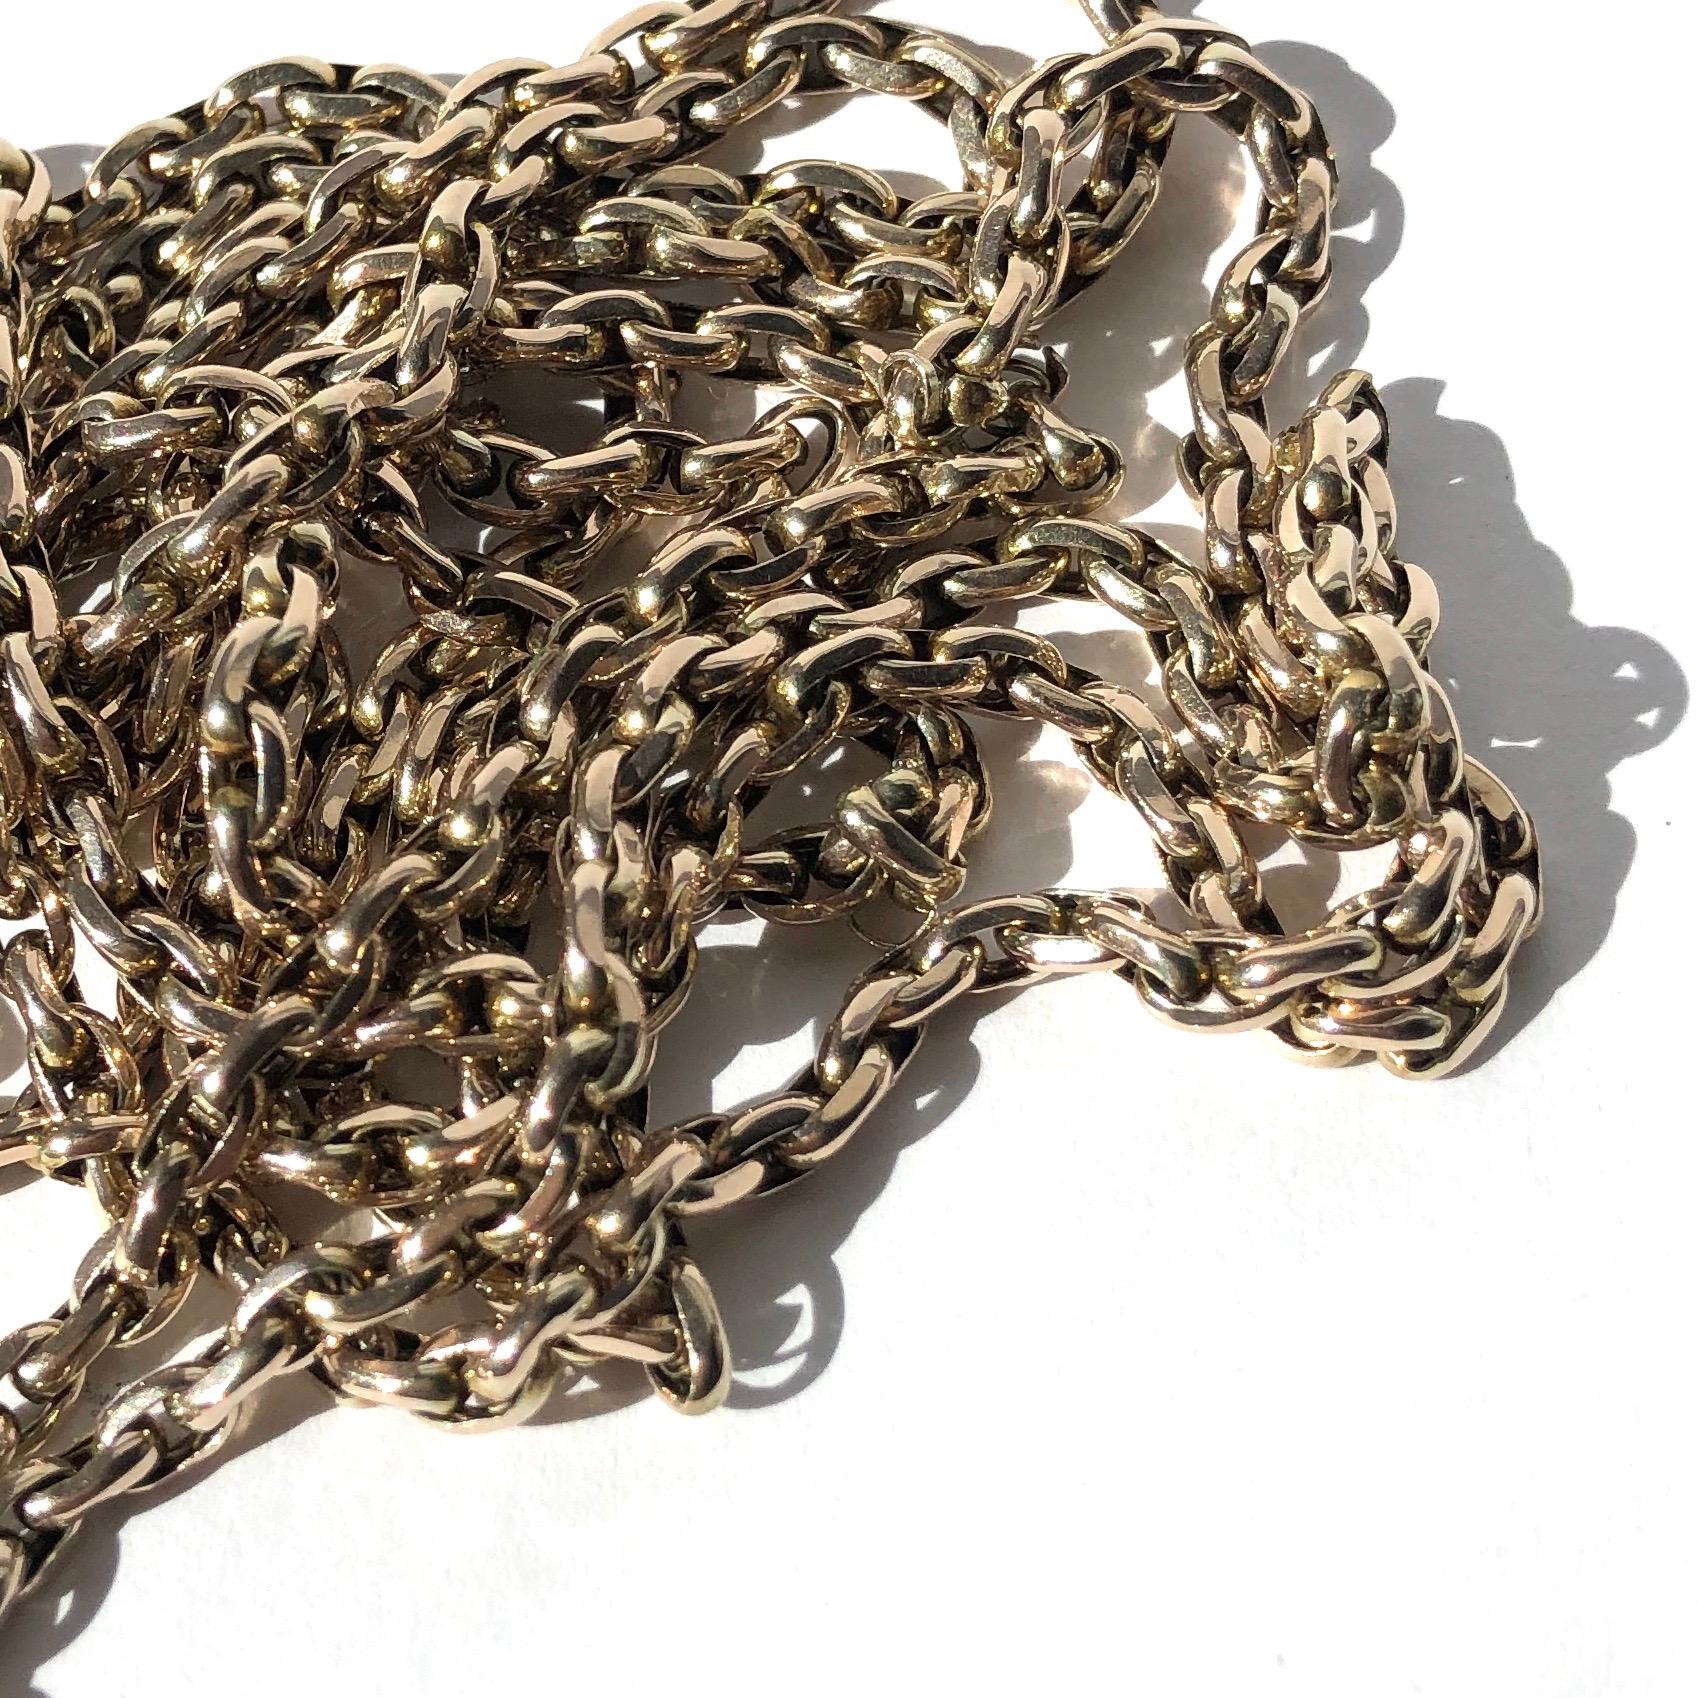 Les chaînes Longuard sont si polyvalentes et peuvent être portées de tant de façons ! Cette chaîne est réalisée en or 9ct et un clip pour chien y est également attaché. 

Longueur : 152 cm

Poids : 35,2 g